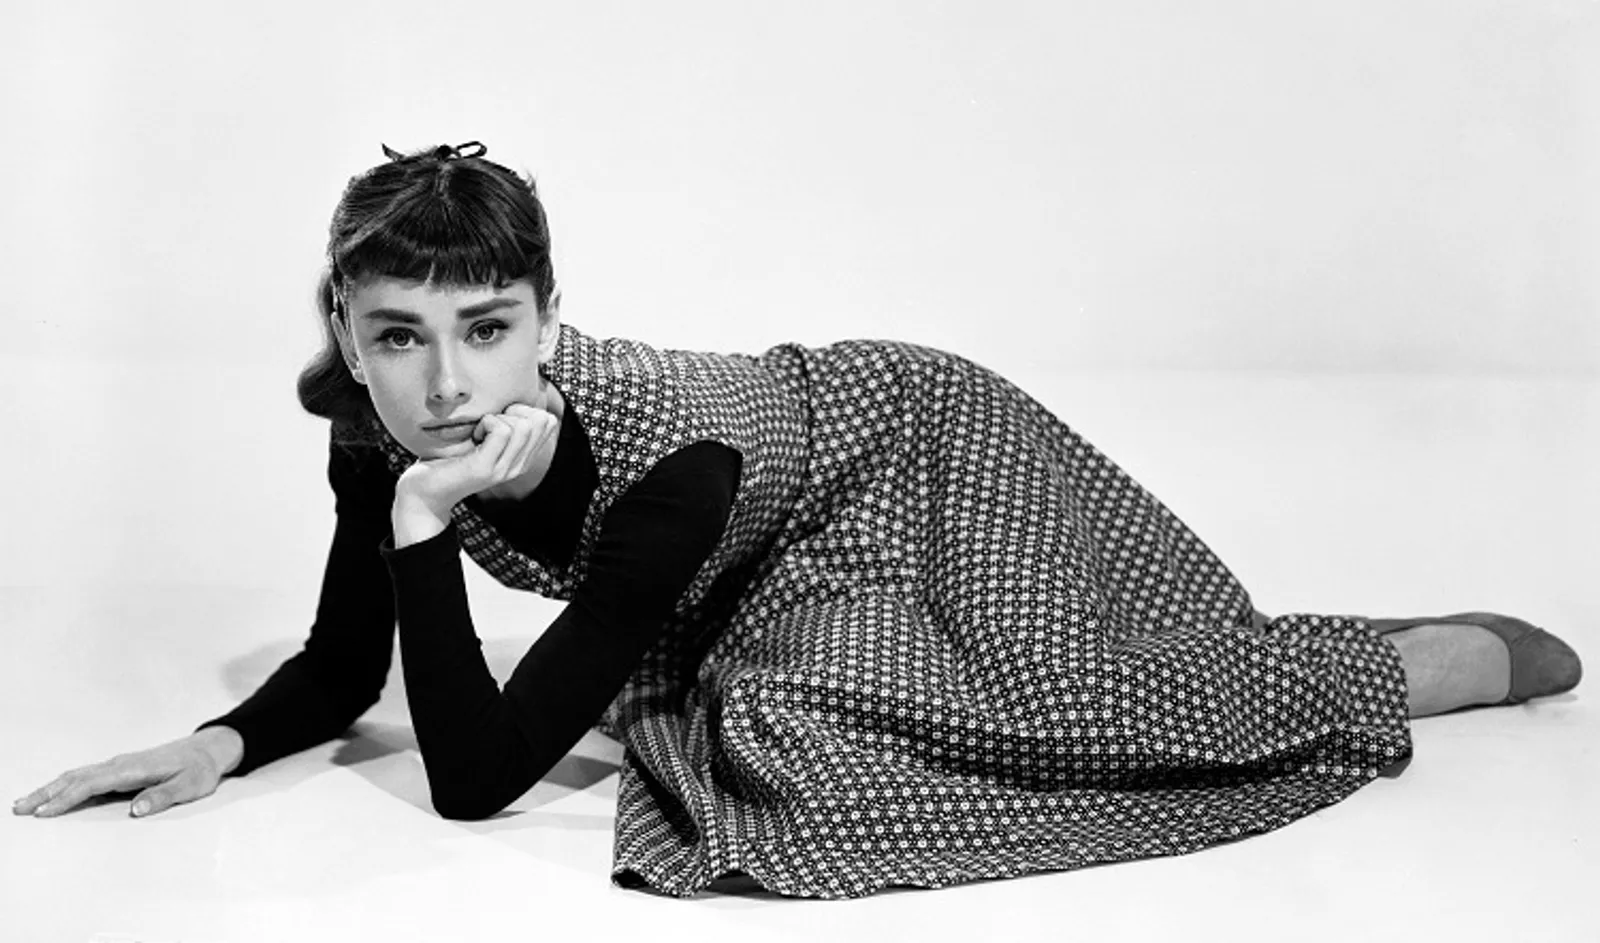 Blast From The Past: 5 Busana Iconic Audrey Hepburn yang Masih Jadi Tren Sampai Sekarang